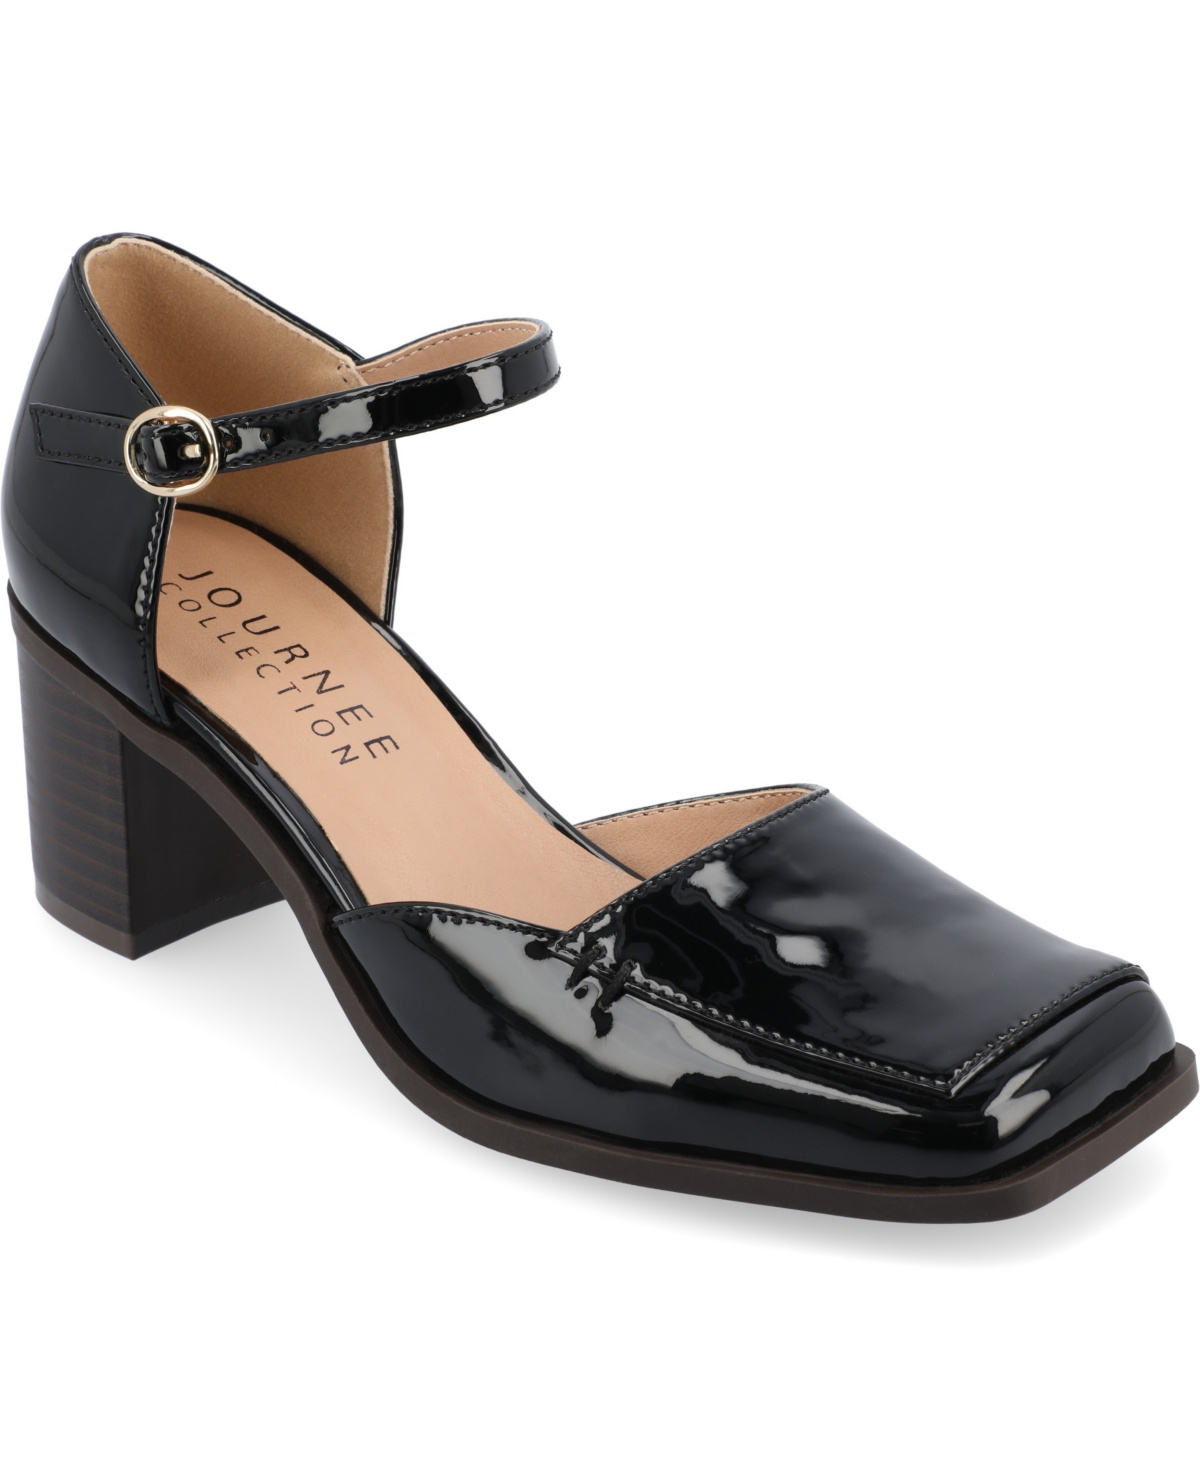 Shop Journee Collection Women's Evangeline Square Toe Block Heel Pumps In Patent,black